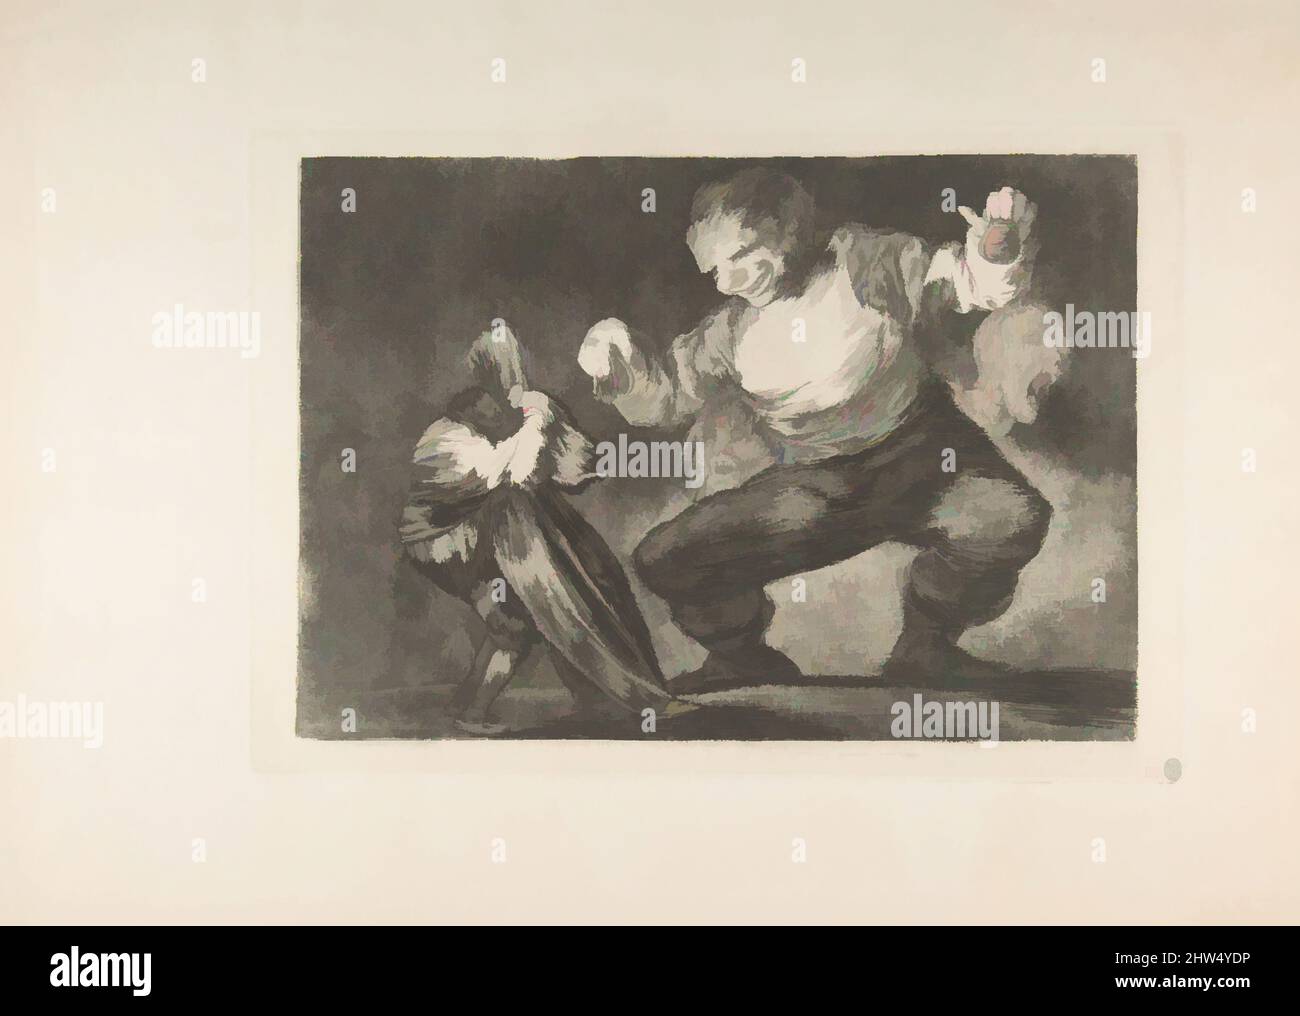 Art inspiré par la planche 4 des 'Disparates': Simpleton, ca. 1816–23 (publié entre 1854 et 63), Etching, burin d'aquatint bruni et point sec, plaque : 9 5/8 × 13 3/4 po. (24,5 × 35 cm), Prints, Goya (Francisco de Goya y Lucientes) (Espagnol, Fuendetodos 1746–1828 Bordeaux, oeuvres classiques modernisées par Artotop avec une touche de modernité. Formes, couleur et valeur, impact visuel accrocheur sur l'art émotions par la liberté d'œuvres d'art d'une manière contemporaine. Un message intemporel qui cherche une nouvelle direction créative. Artistes qui se tournent vers le support numérique et créent le NFT Artotop Banque D'Images